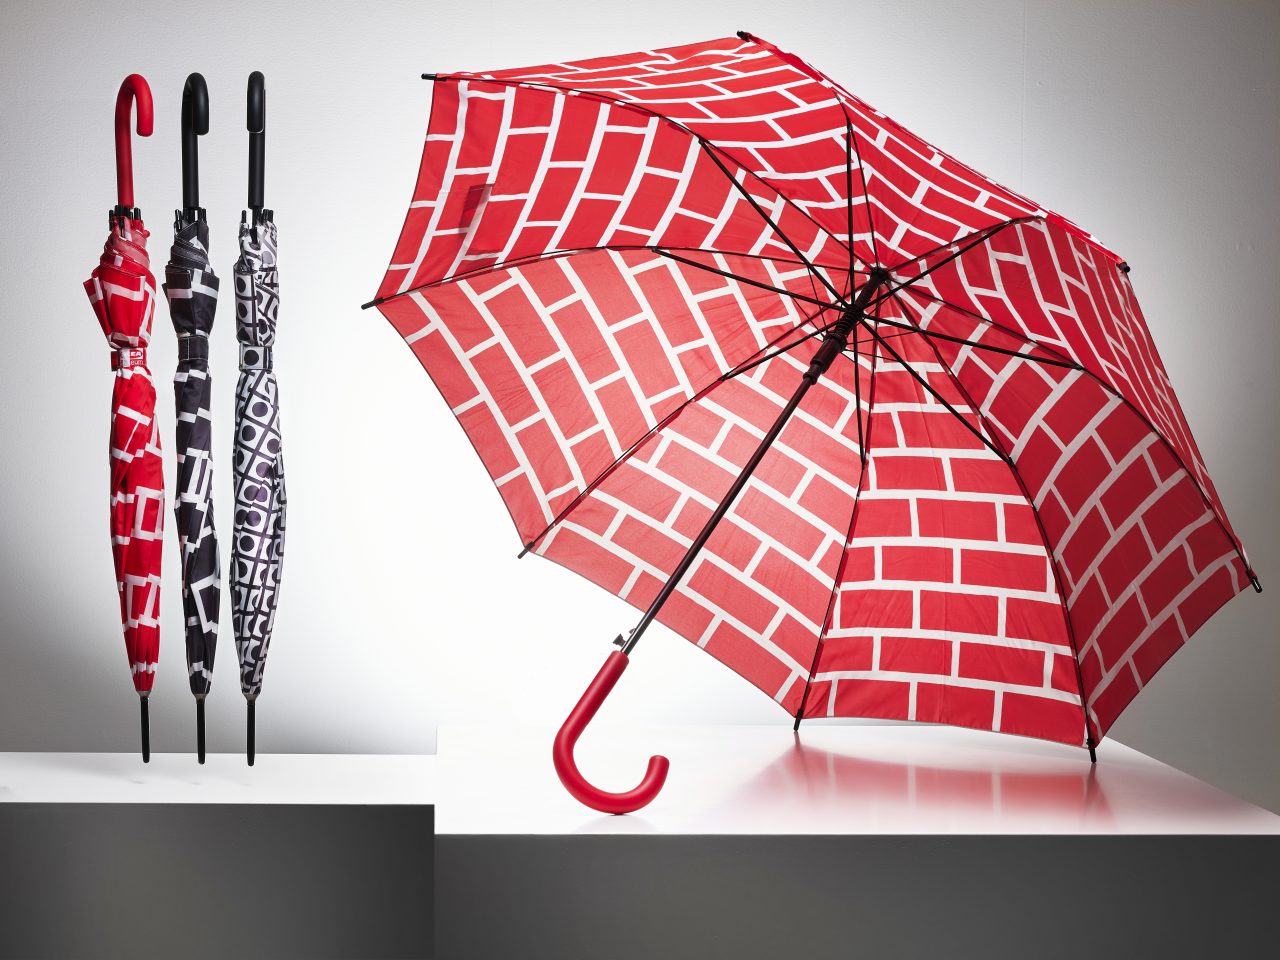 Regenschirme in verschiedenen Mustern in Rot/Weiß, Schwarz/Weiß und Grau/Weiß